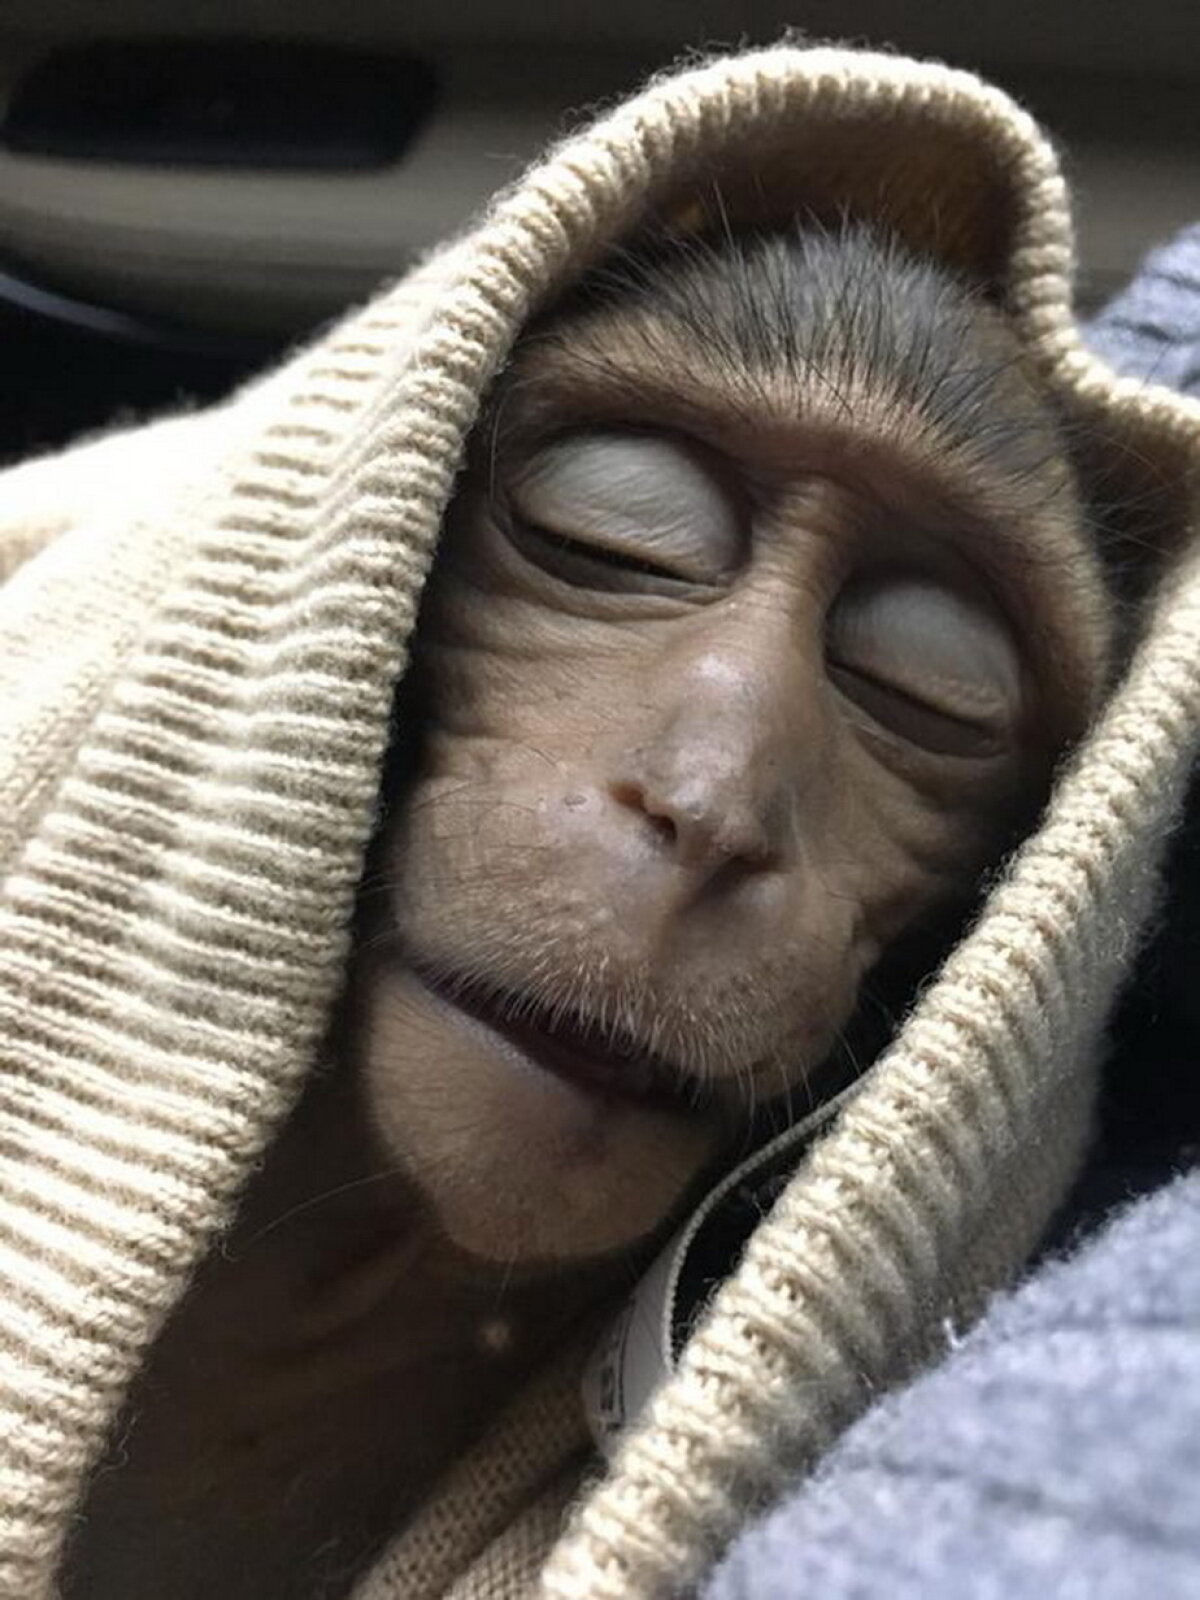 FOTO Un pui de maimuță a stat în comă 10 ore după o supradoză de cafea